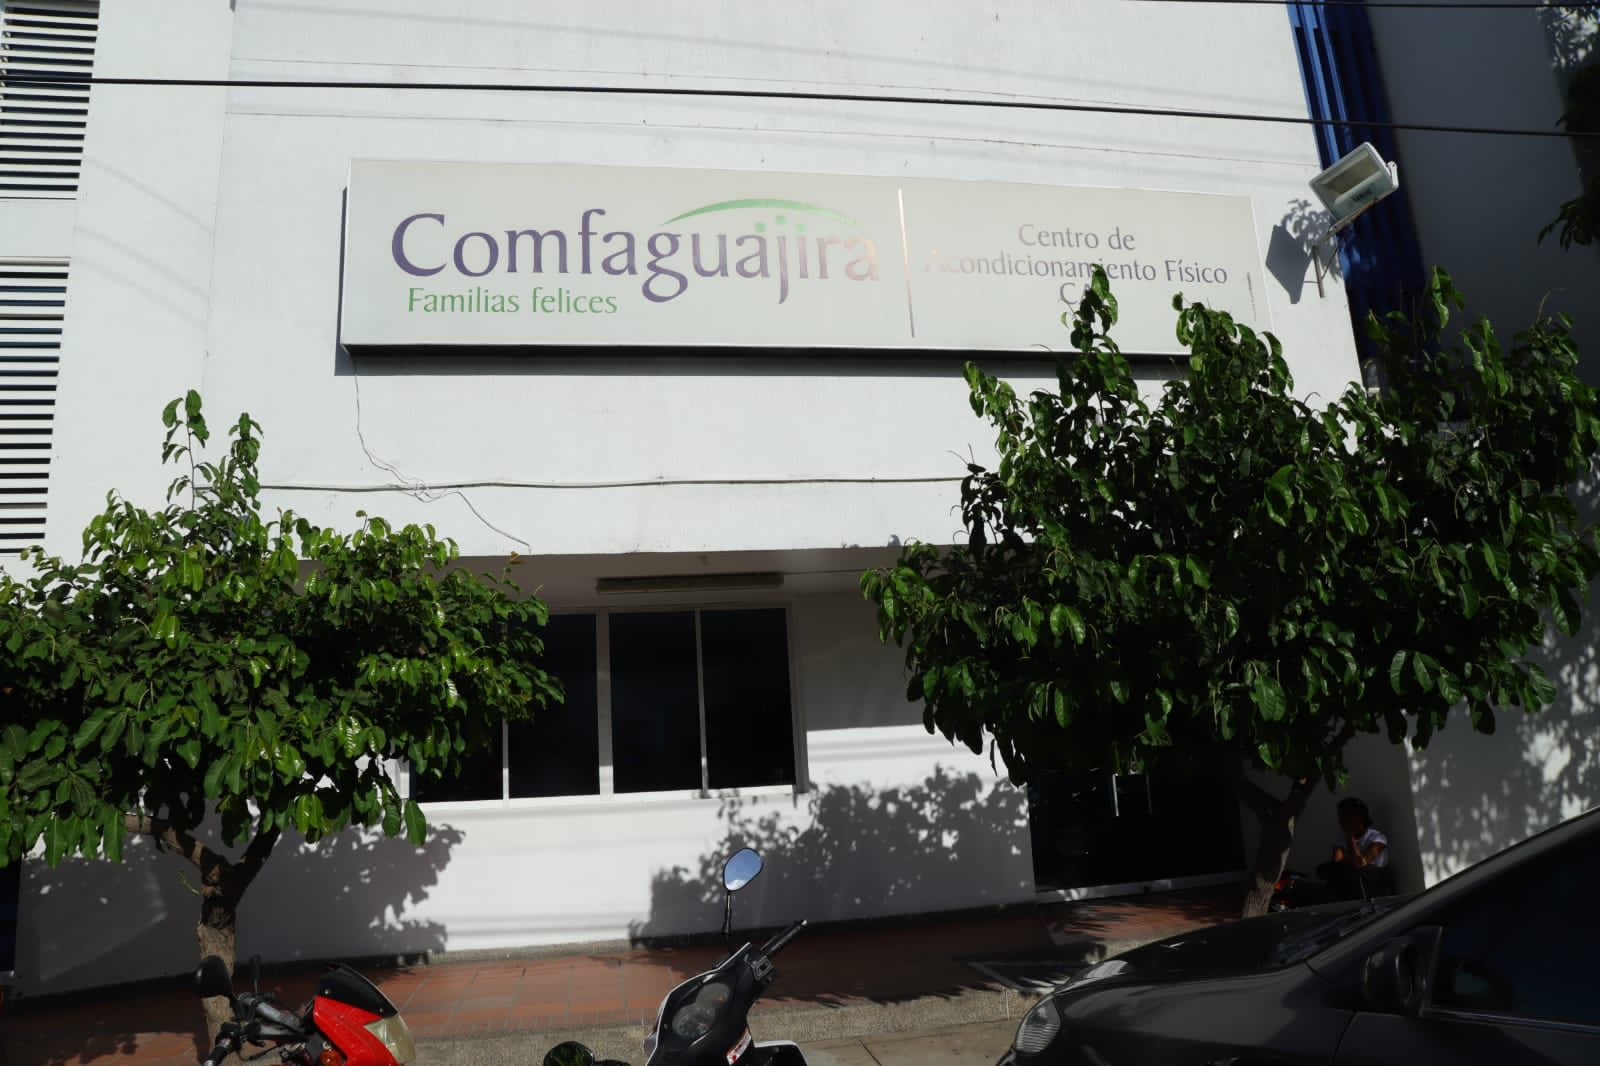 Sede de Comfaguajira